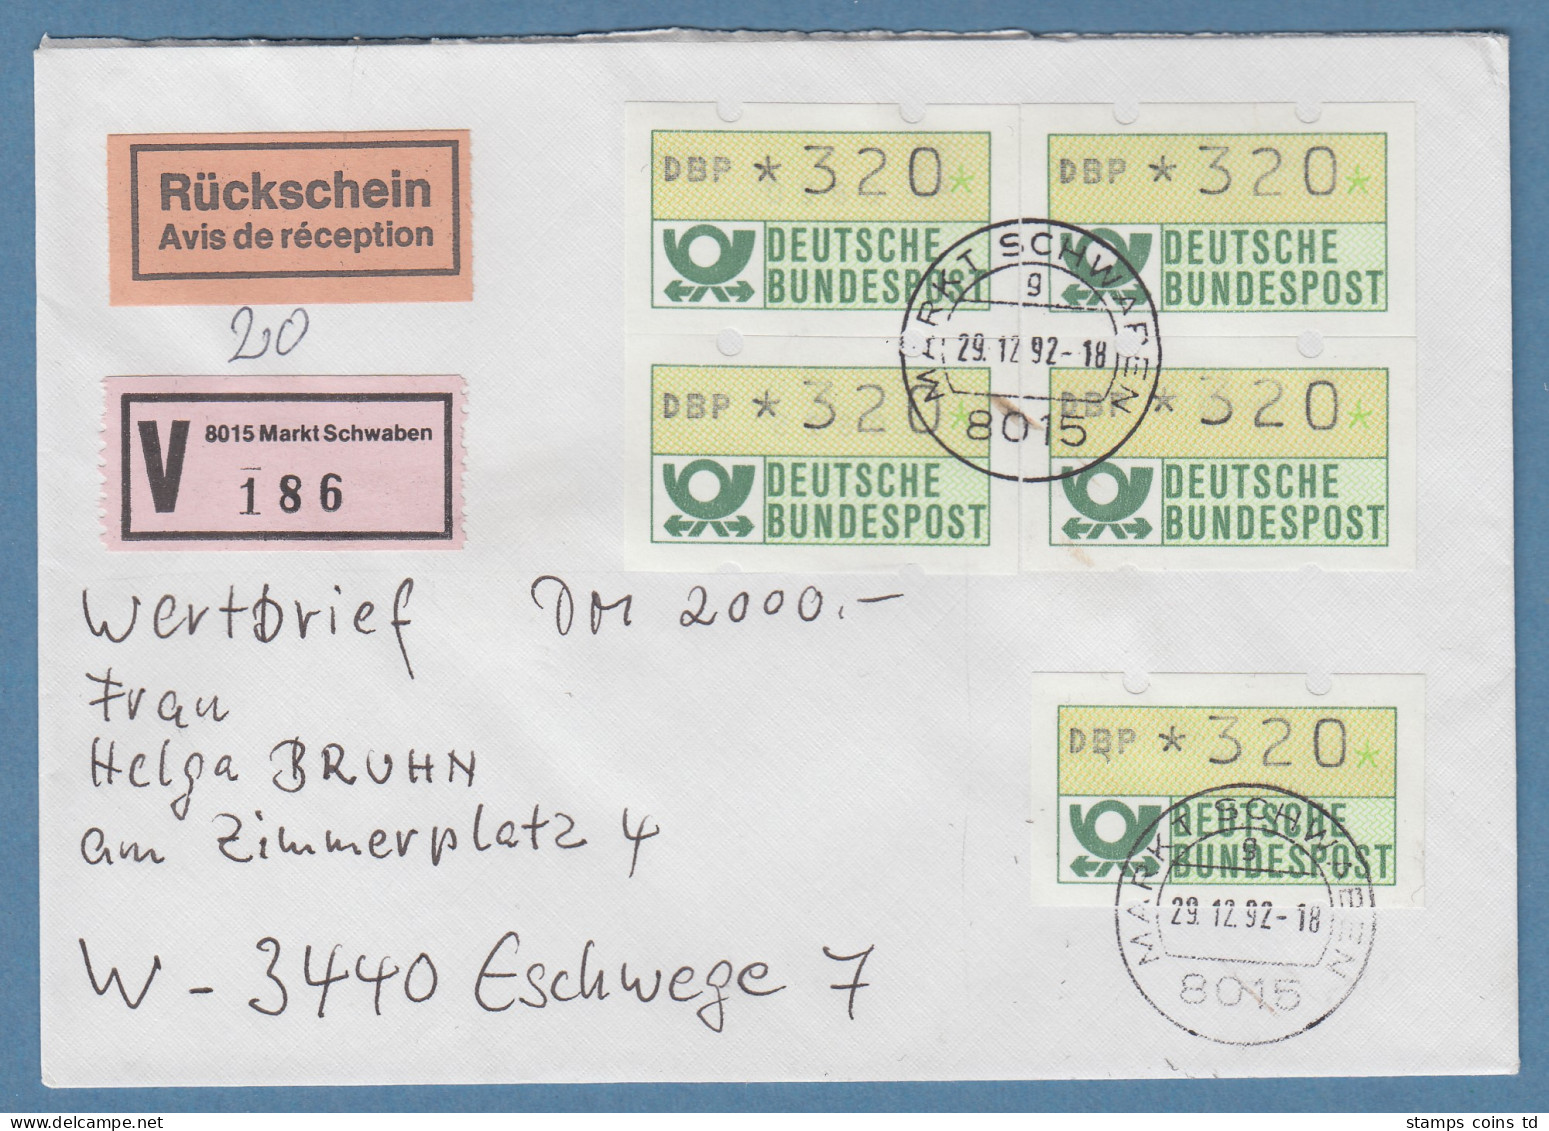 NAGLER-ATM Mi-Nr 1.2 Wert 320 5x Als MEF Auf Rsch-Wertbrief 2000,-DM , 29.12.92  - Automatenmarken [ATM]